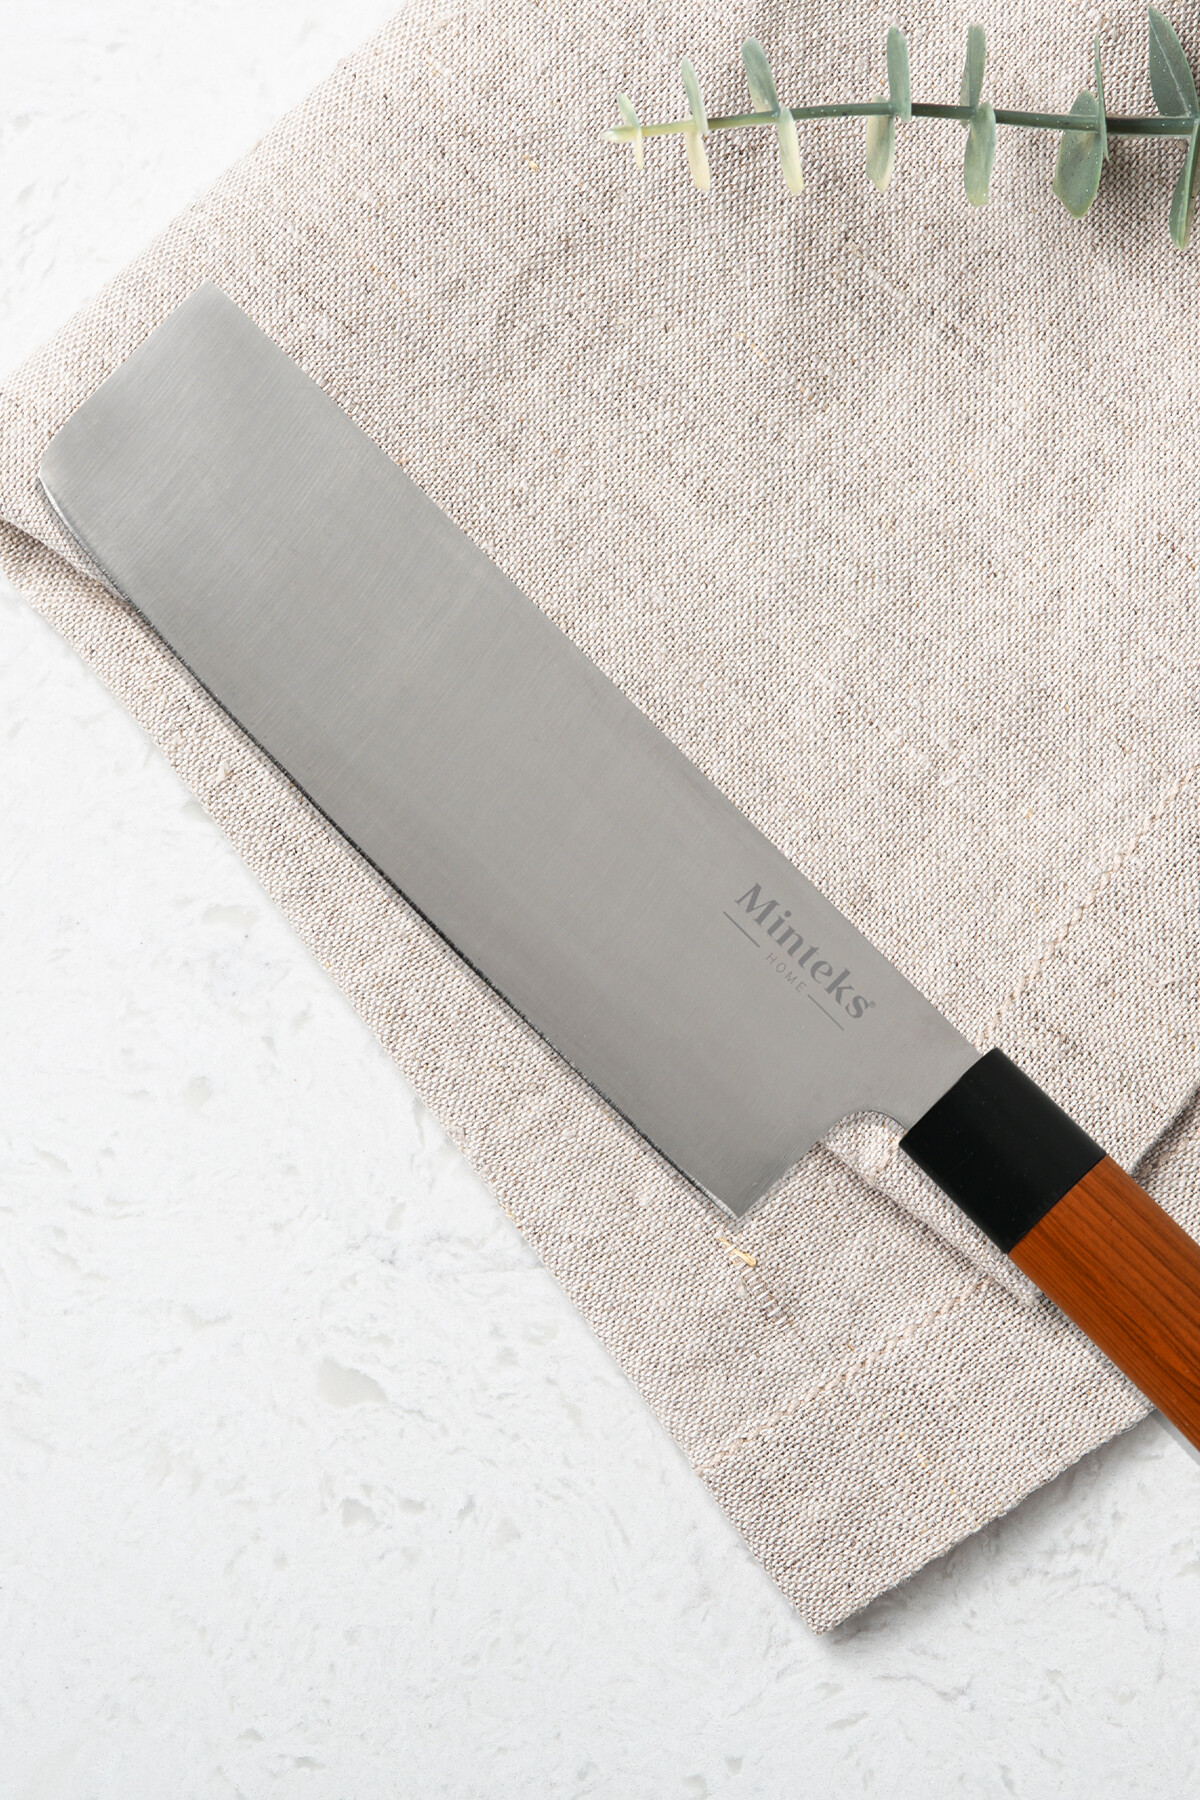 Minteks İnci Kaplama Nakırı 31 cm Ahşap Saplı Çelik Sef Bıçağı İ0500 - 3